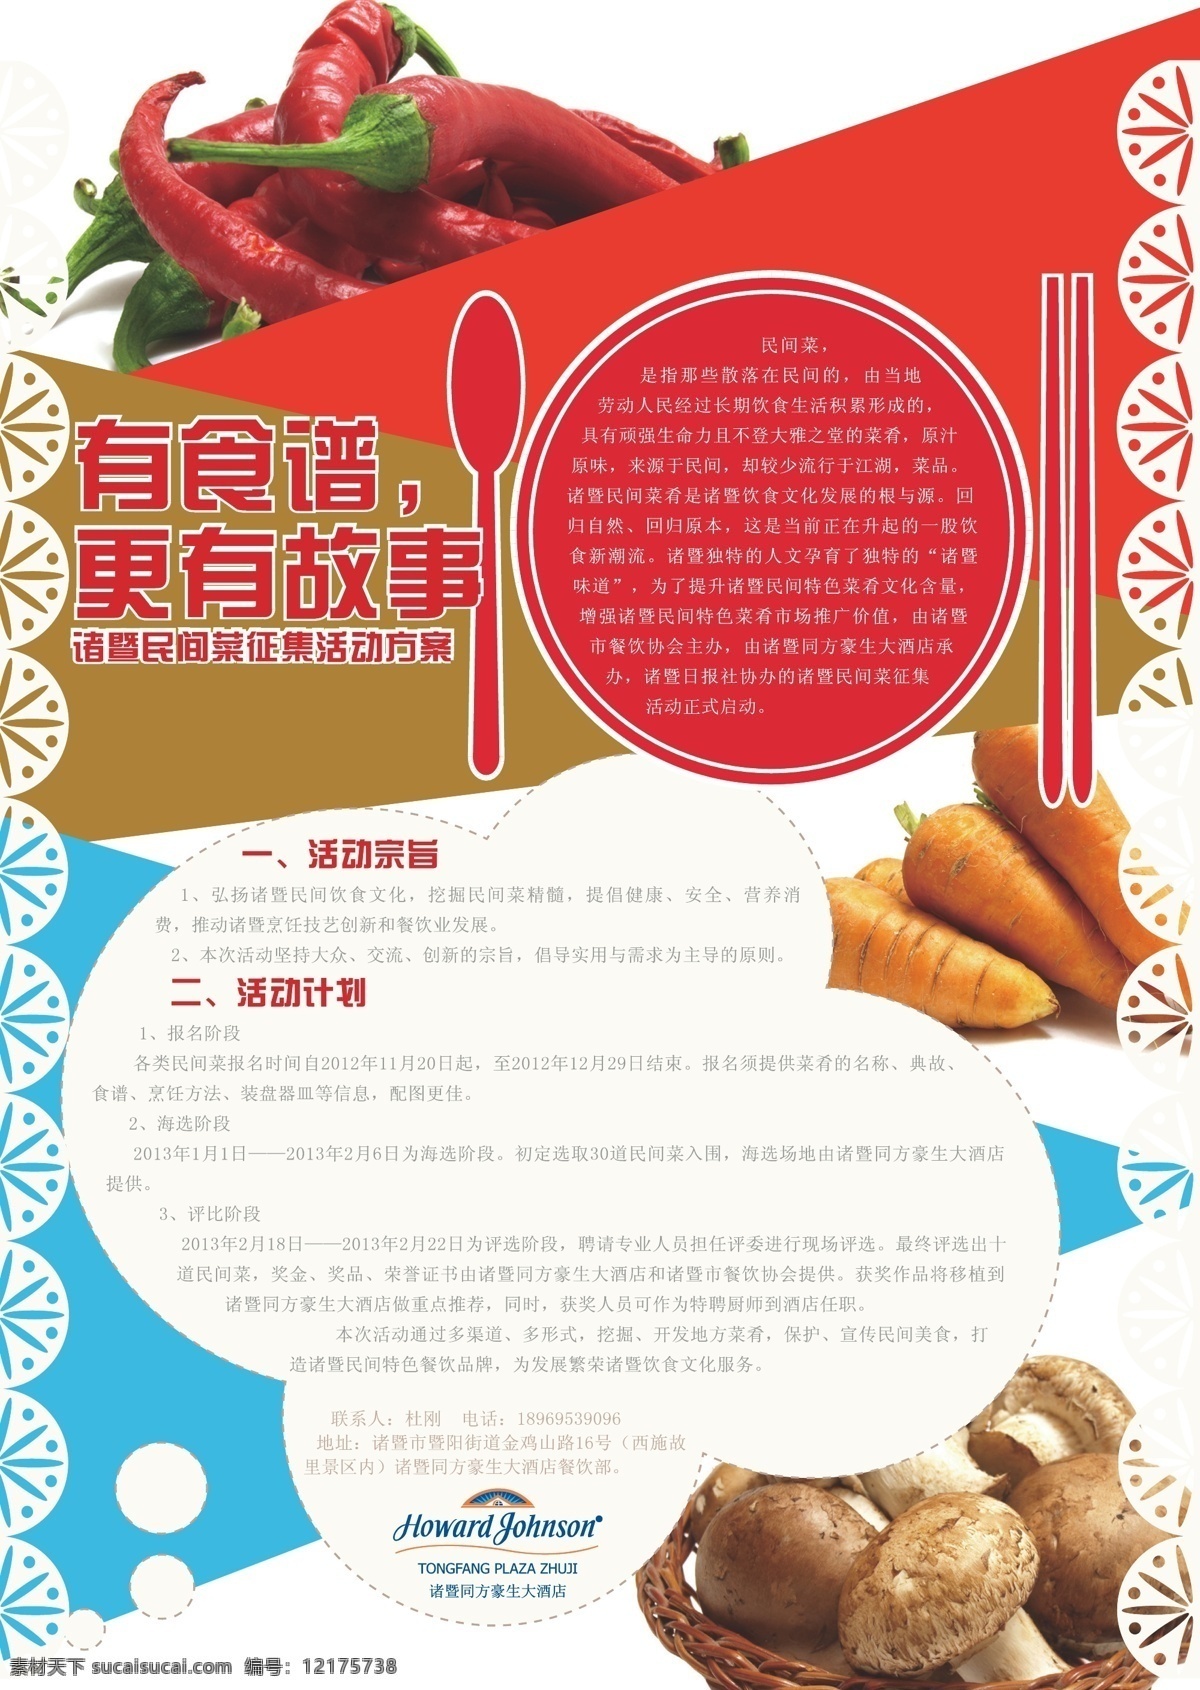 民间 菜 广告 蔬菜 饮食 中餐 矢量 模板下载 民间菜广告 民间菜 其他海报设计